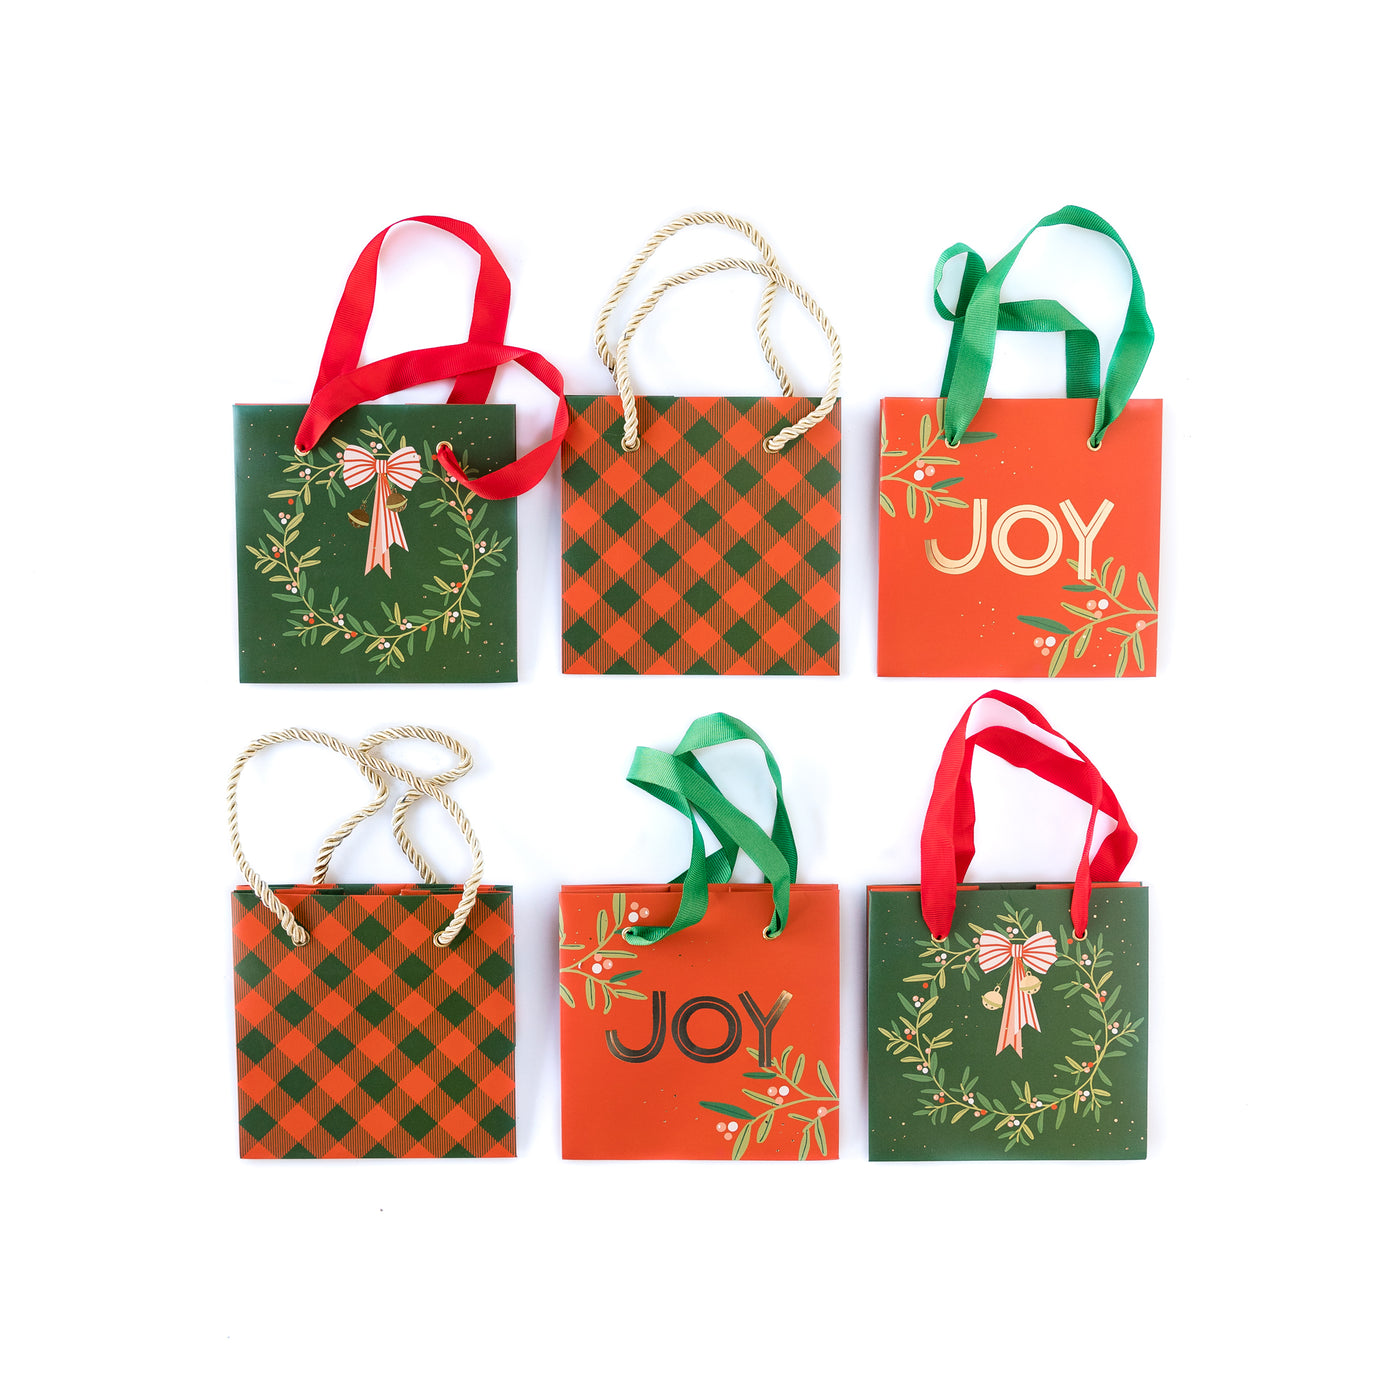 PLGBS05 -Christmas Wreath Mini Gift Bag Set of 6